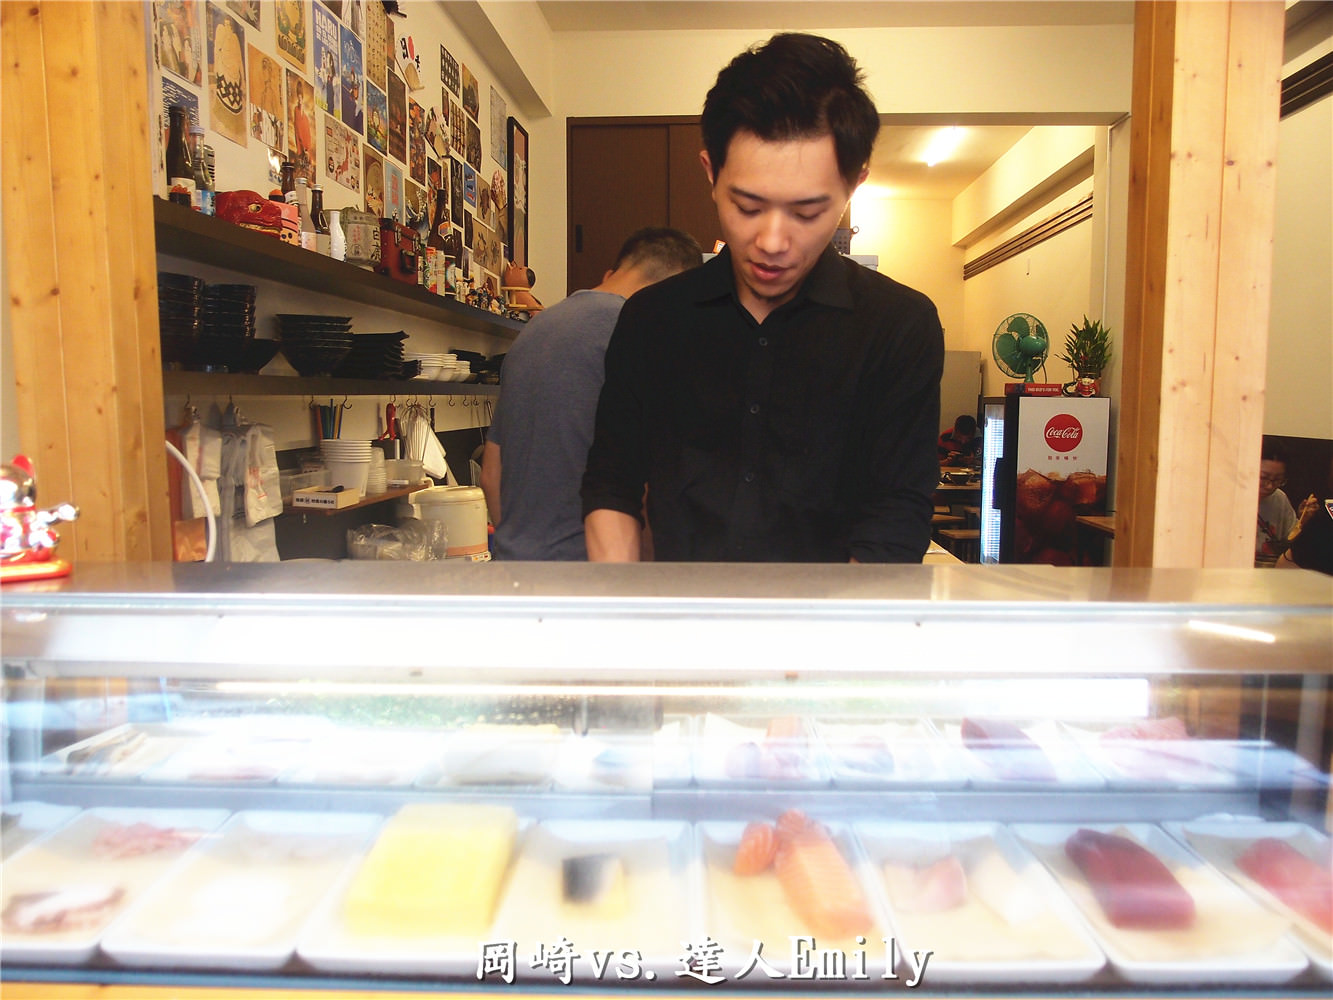 【一中街美食】巷弄內的平價美食~岡崎日本料理,全部都是帥哥來服務喔!